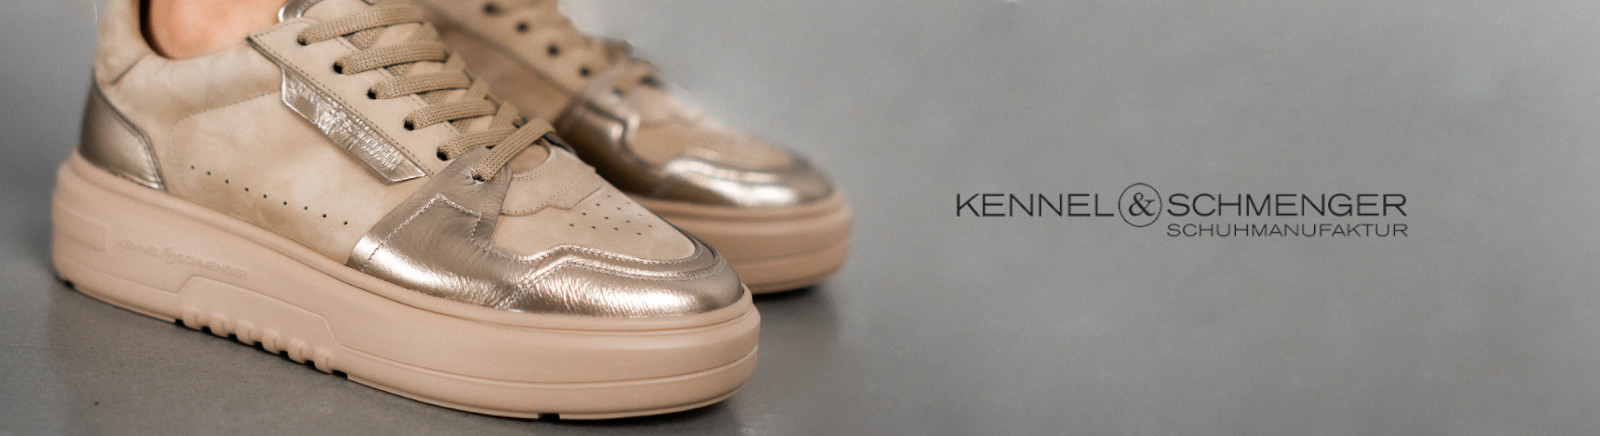 Kennel & Schmenger Stiefel für Damen im Online-Shop von GISY kaufen